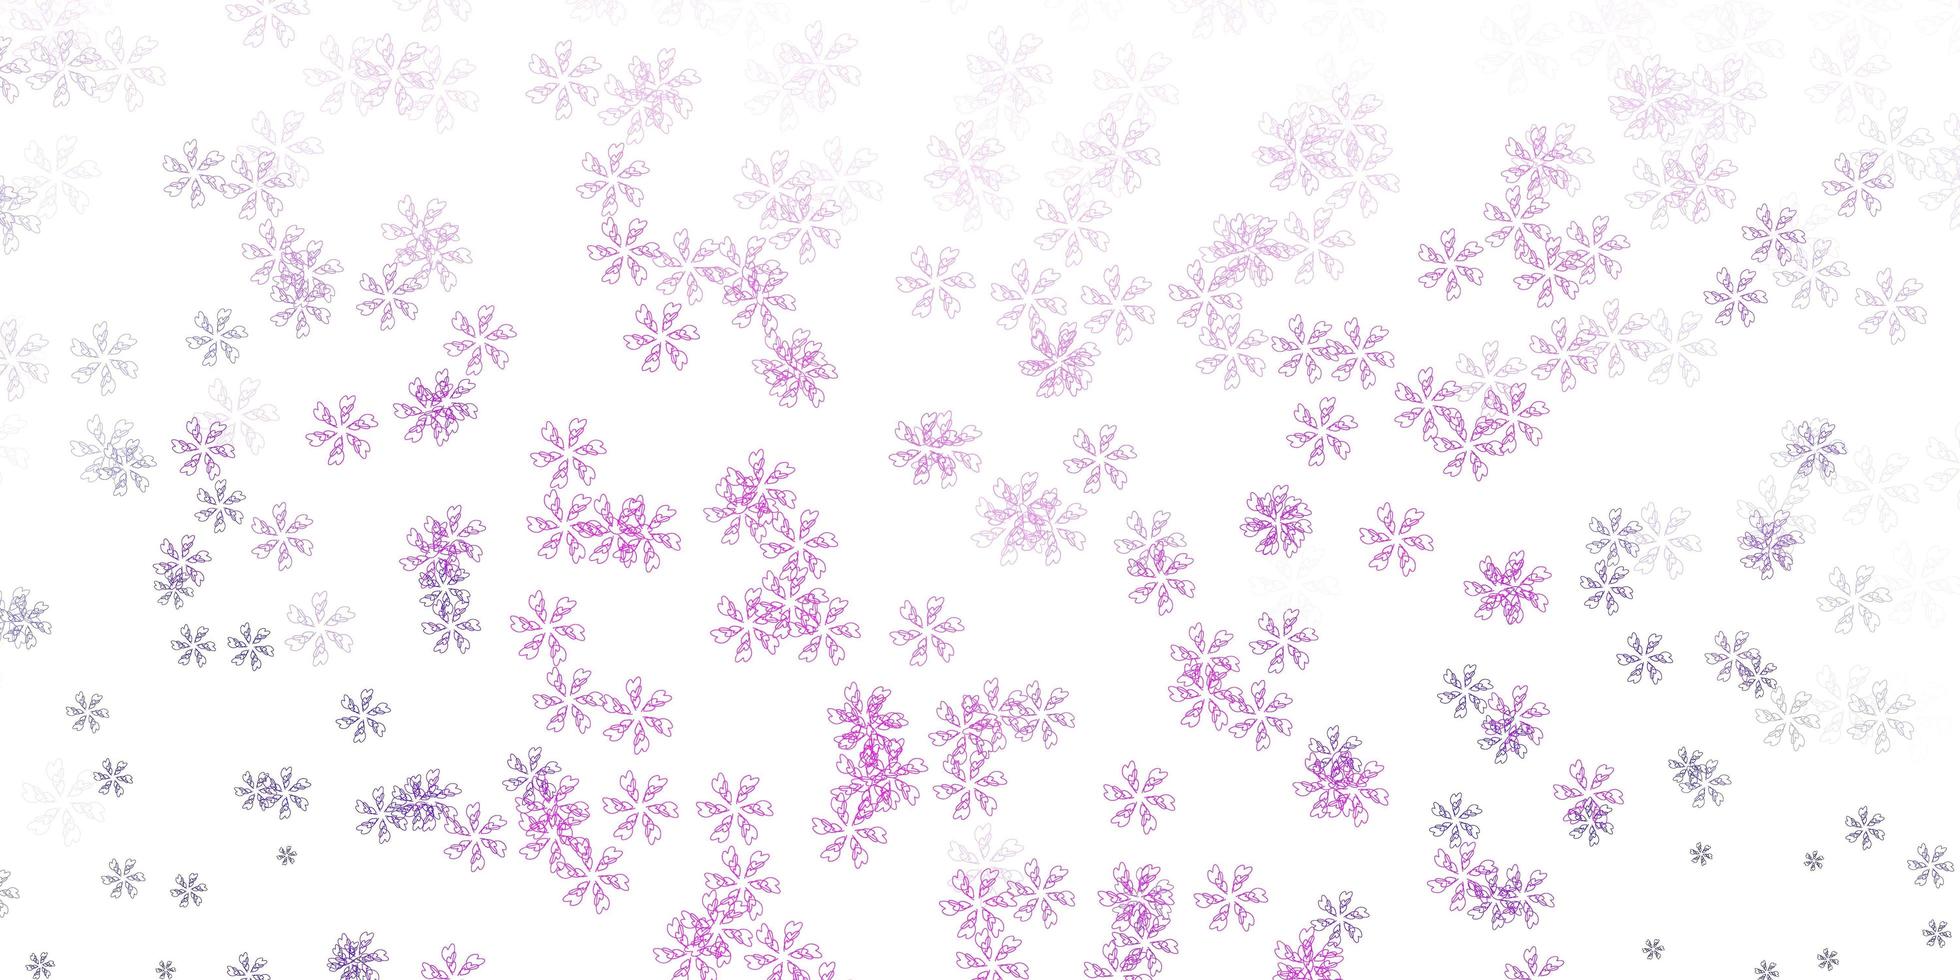 layout abstrato do vetor roxo, rosa claro com folhas.